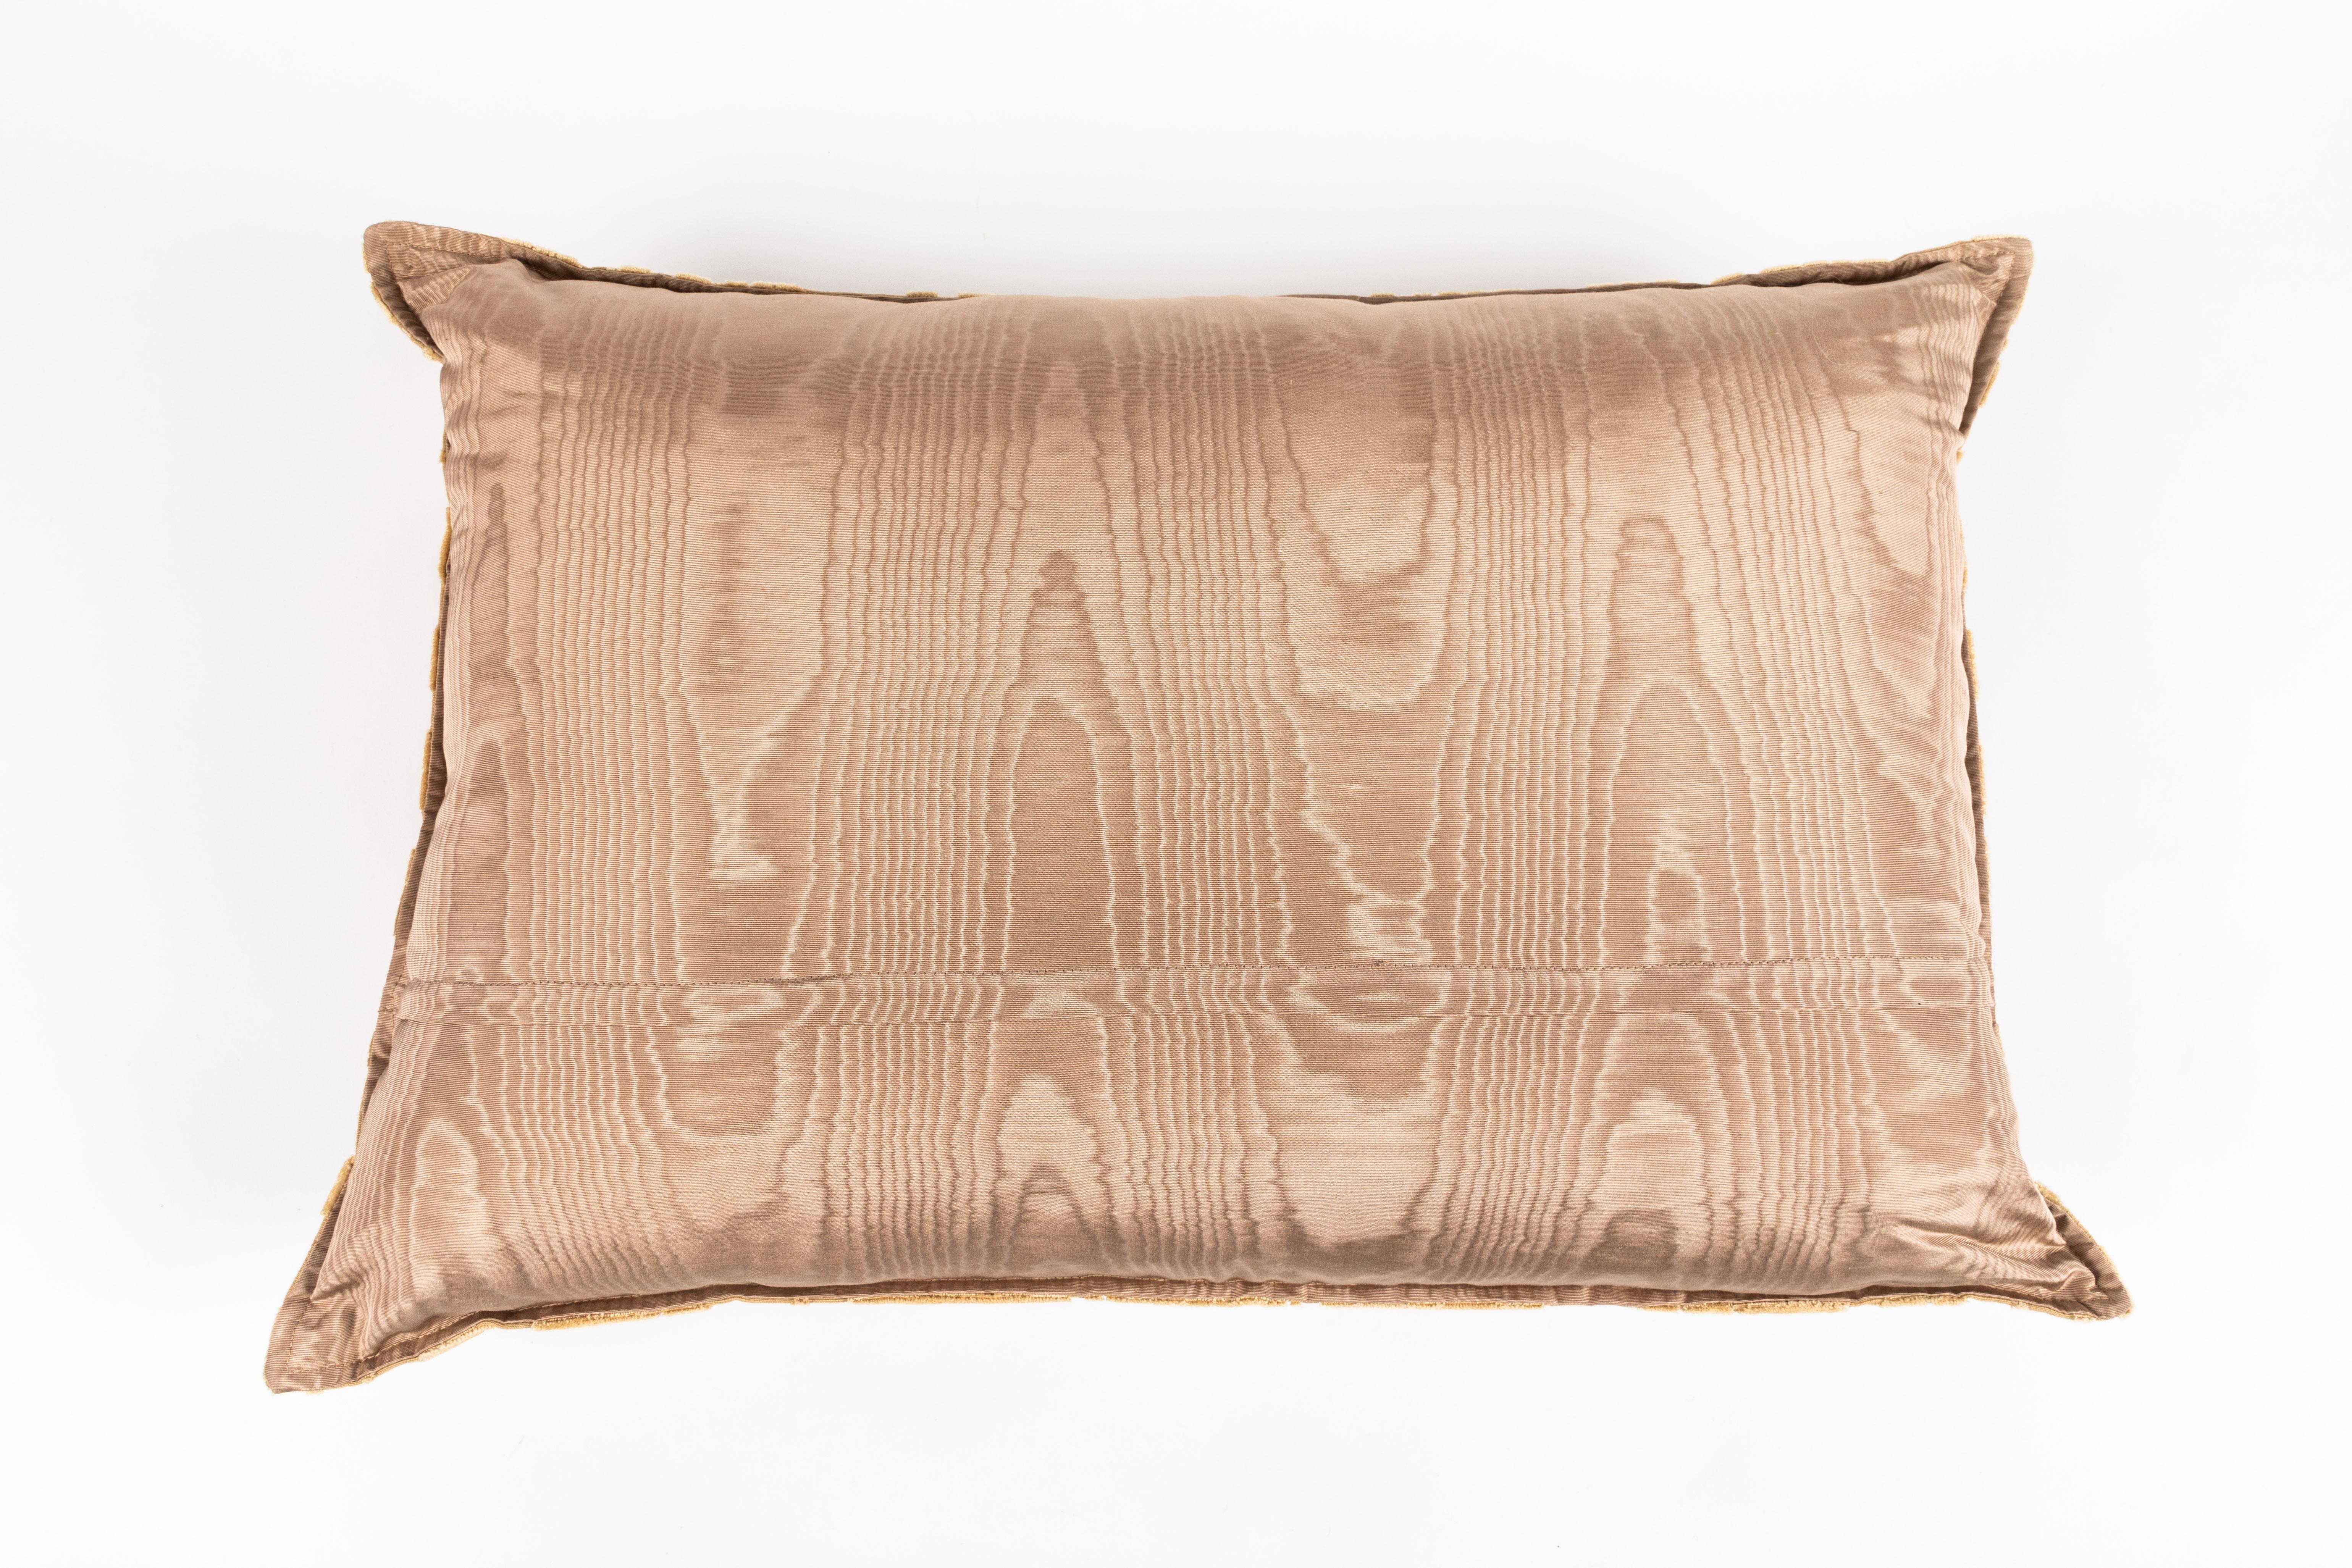 Bevilacqua Animal Motif 'Bestiario' Handcut Gold Velvet Pillow 1